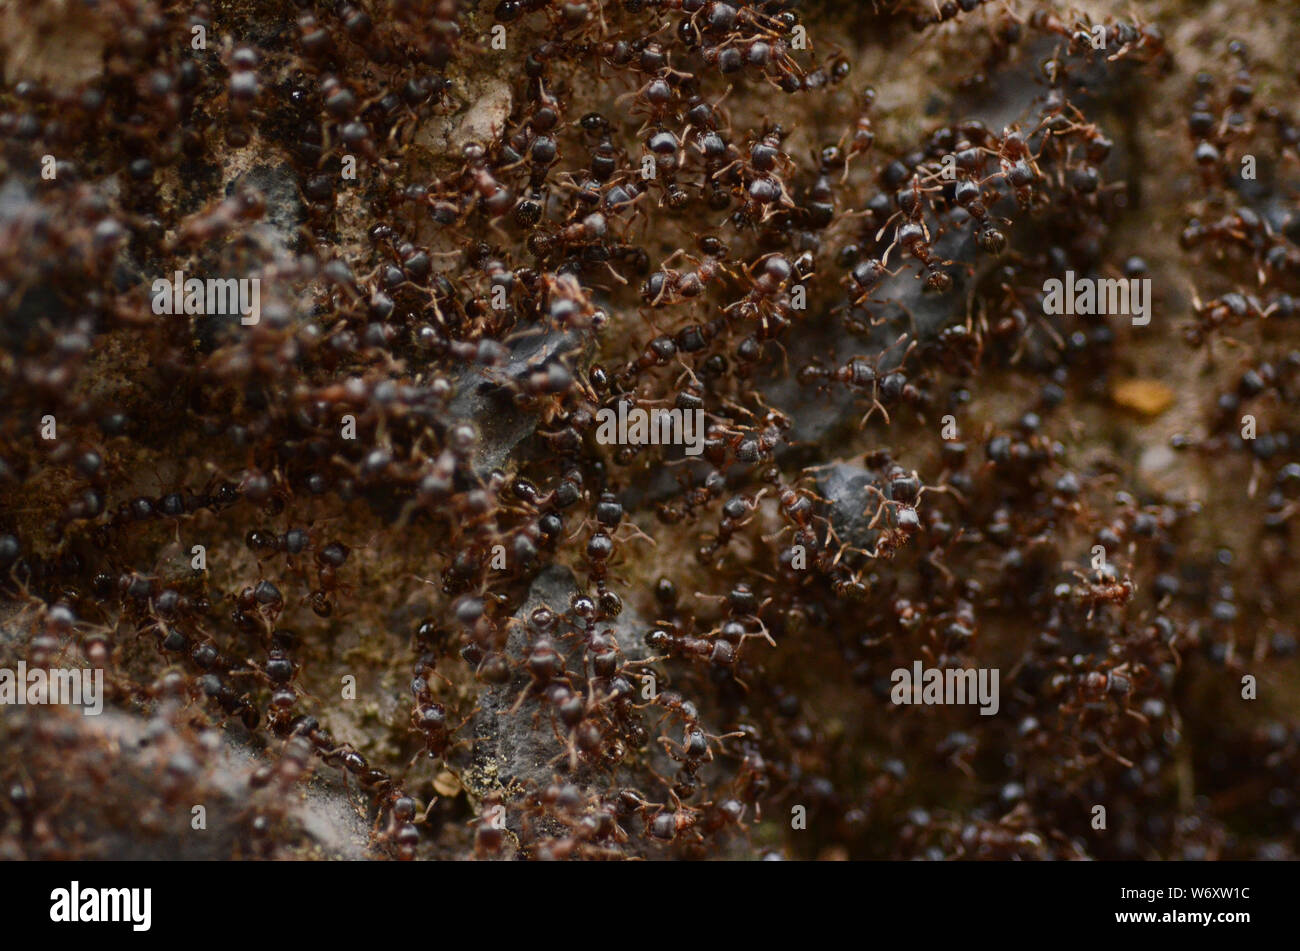 Schlacht: Auf einer kurbigen Straße findet ein epischer Krieg zwischen zwei Ameisenkolonien statt. Stockfoto